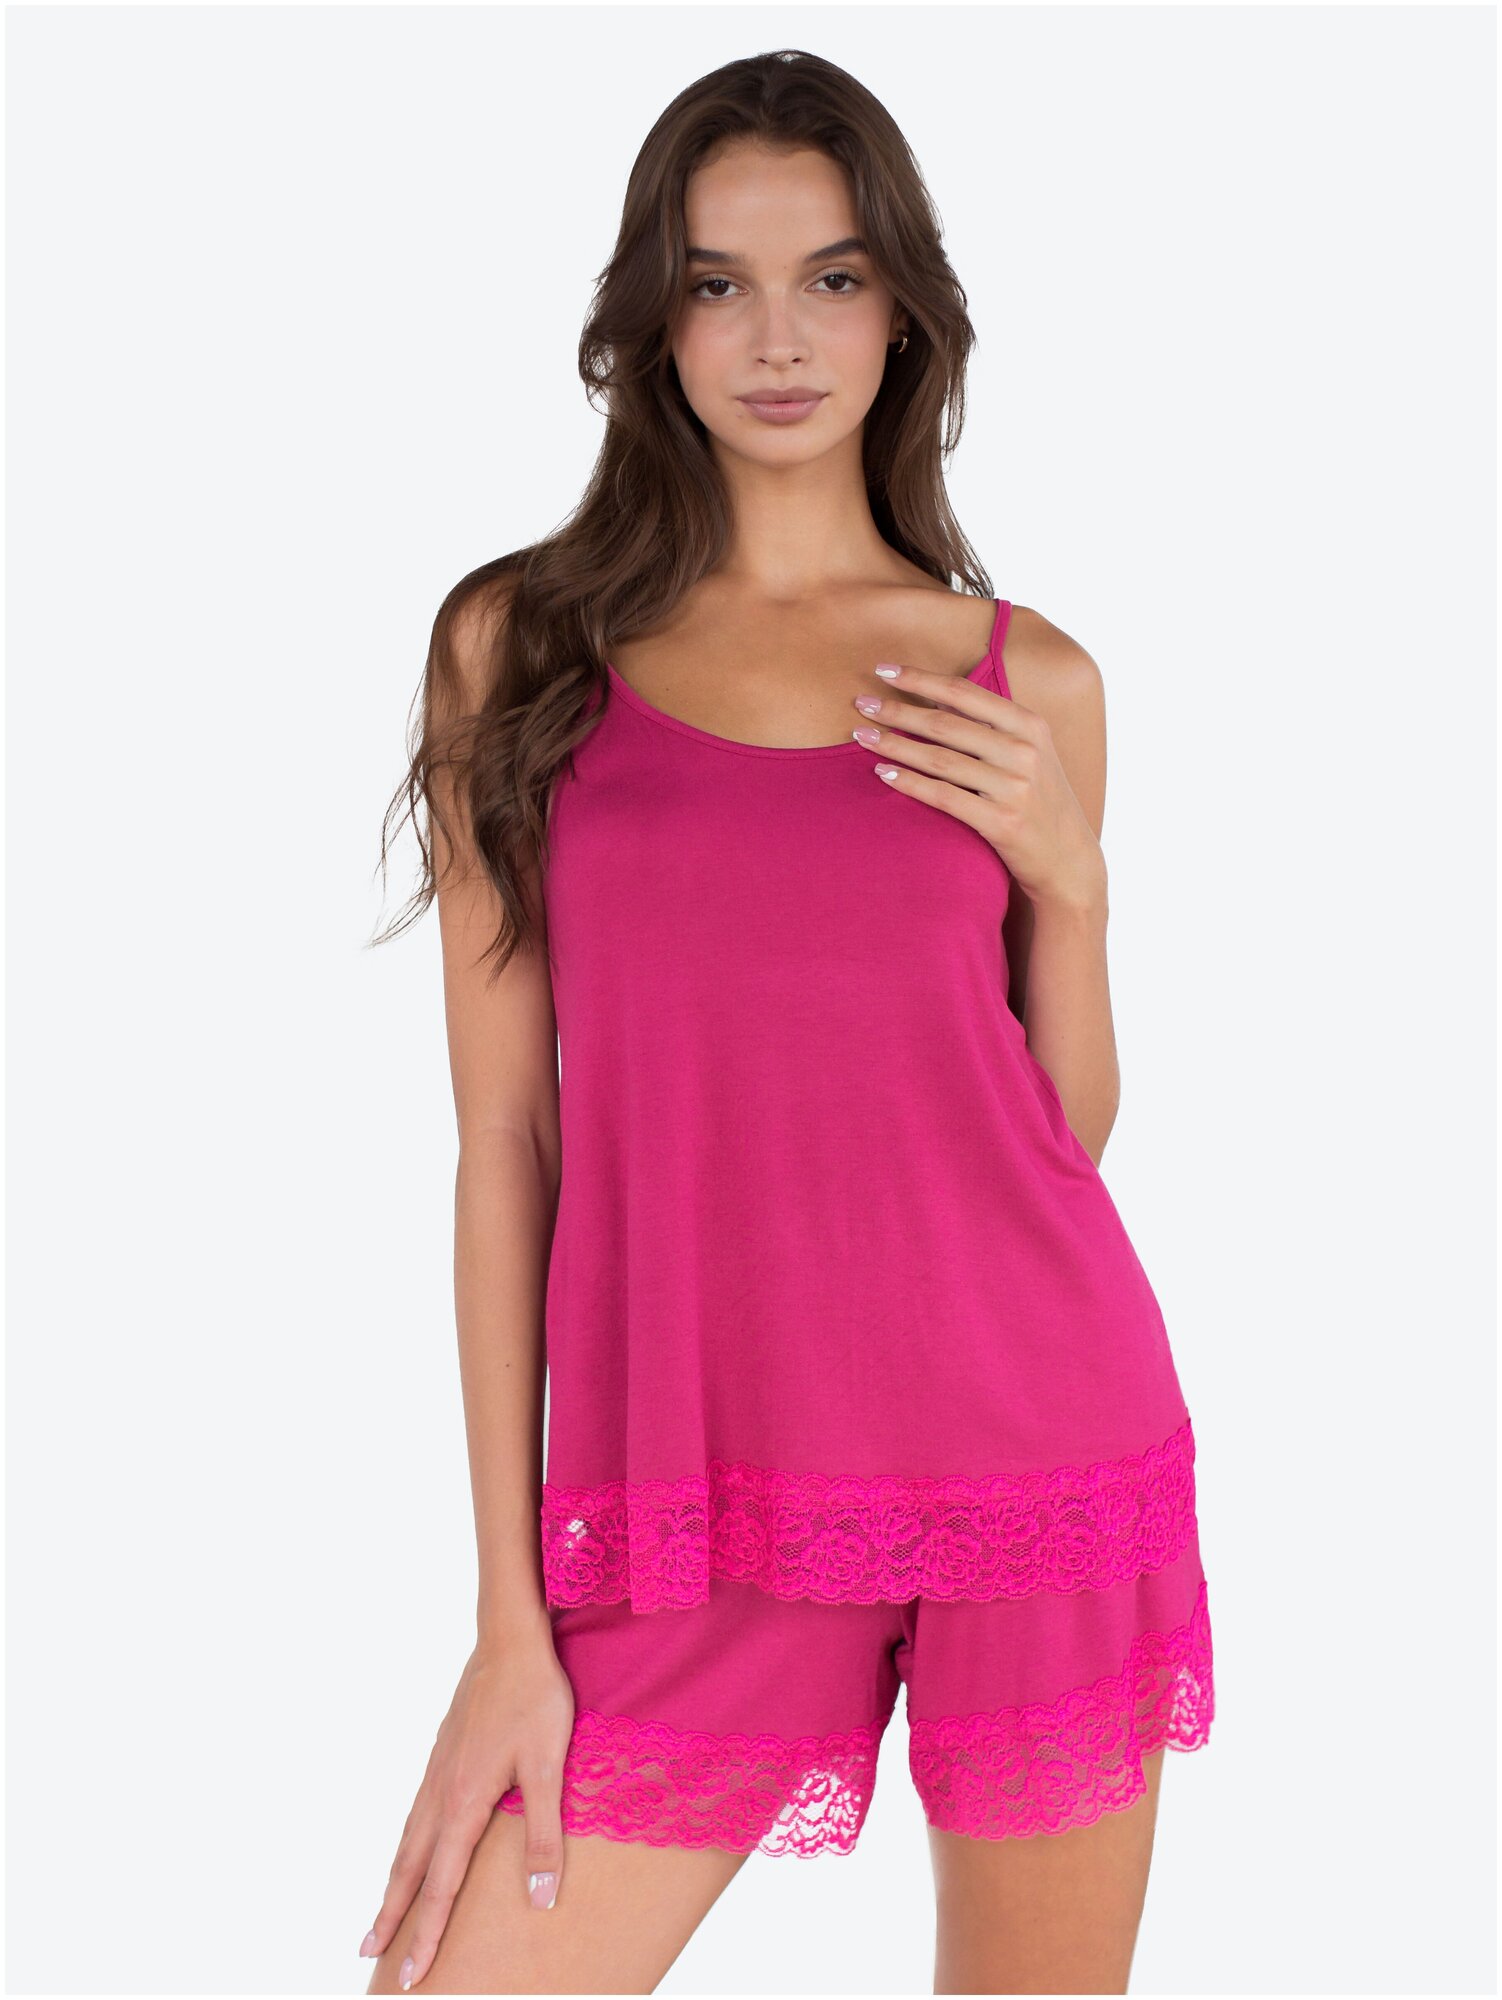 Пижама женская с кружевом Modellini 1266/4, ярко-розовая - фотография № 1